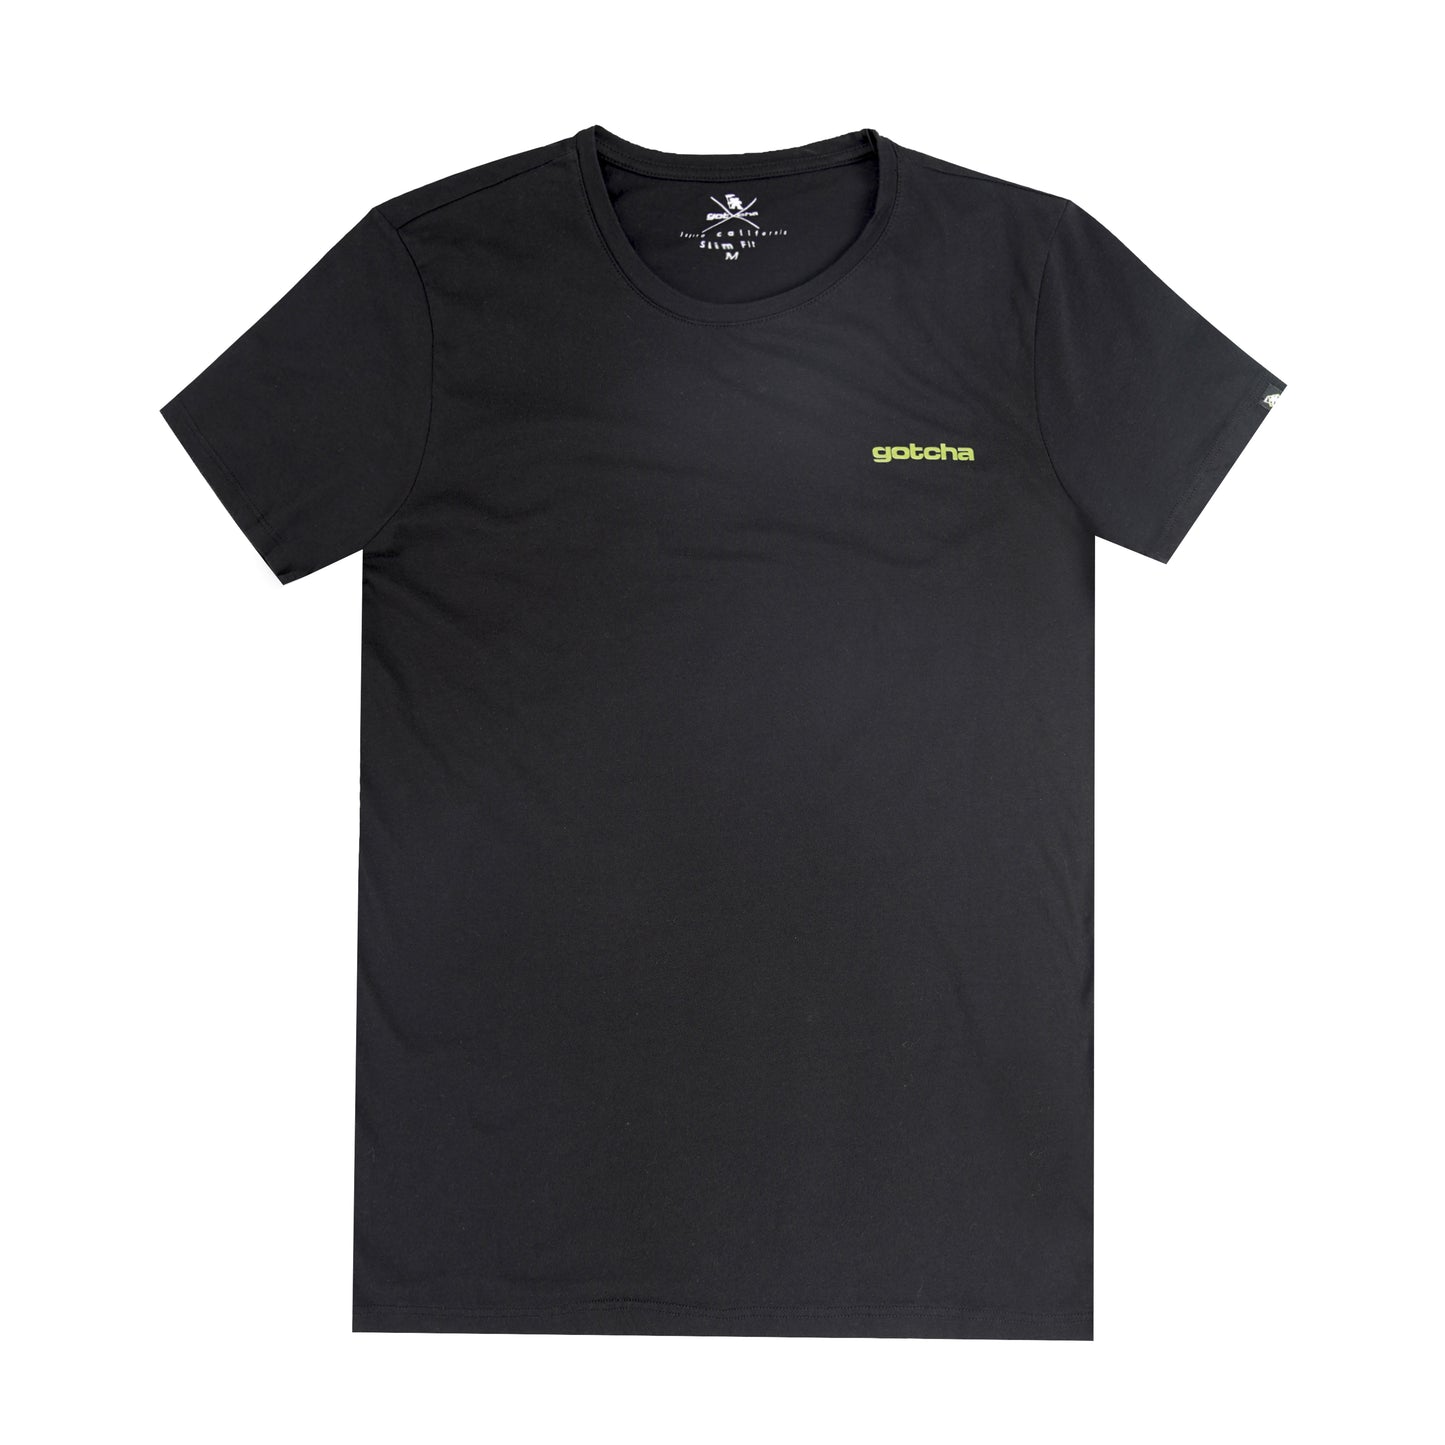 Black T shirt for men in dubai